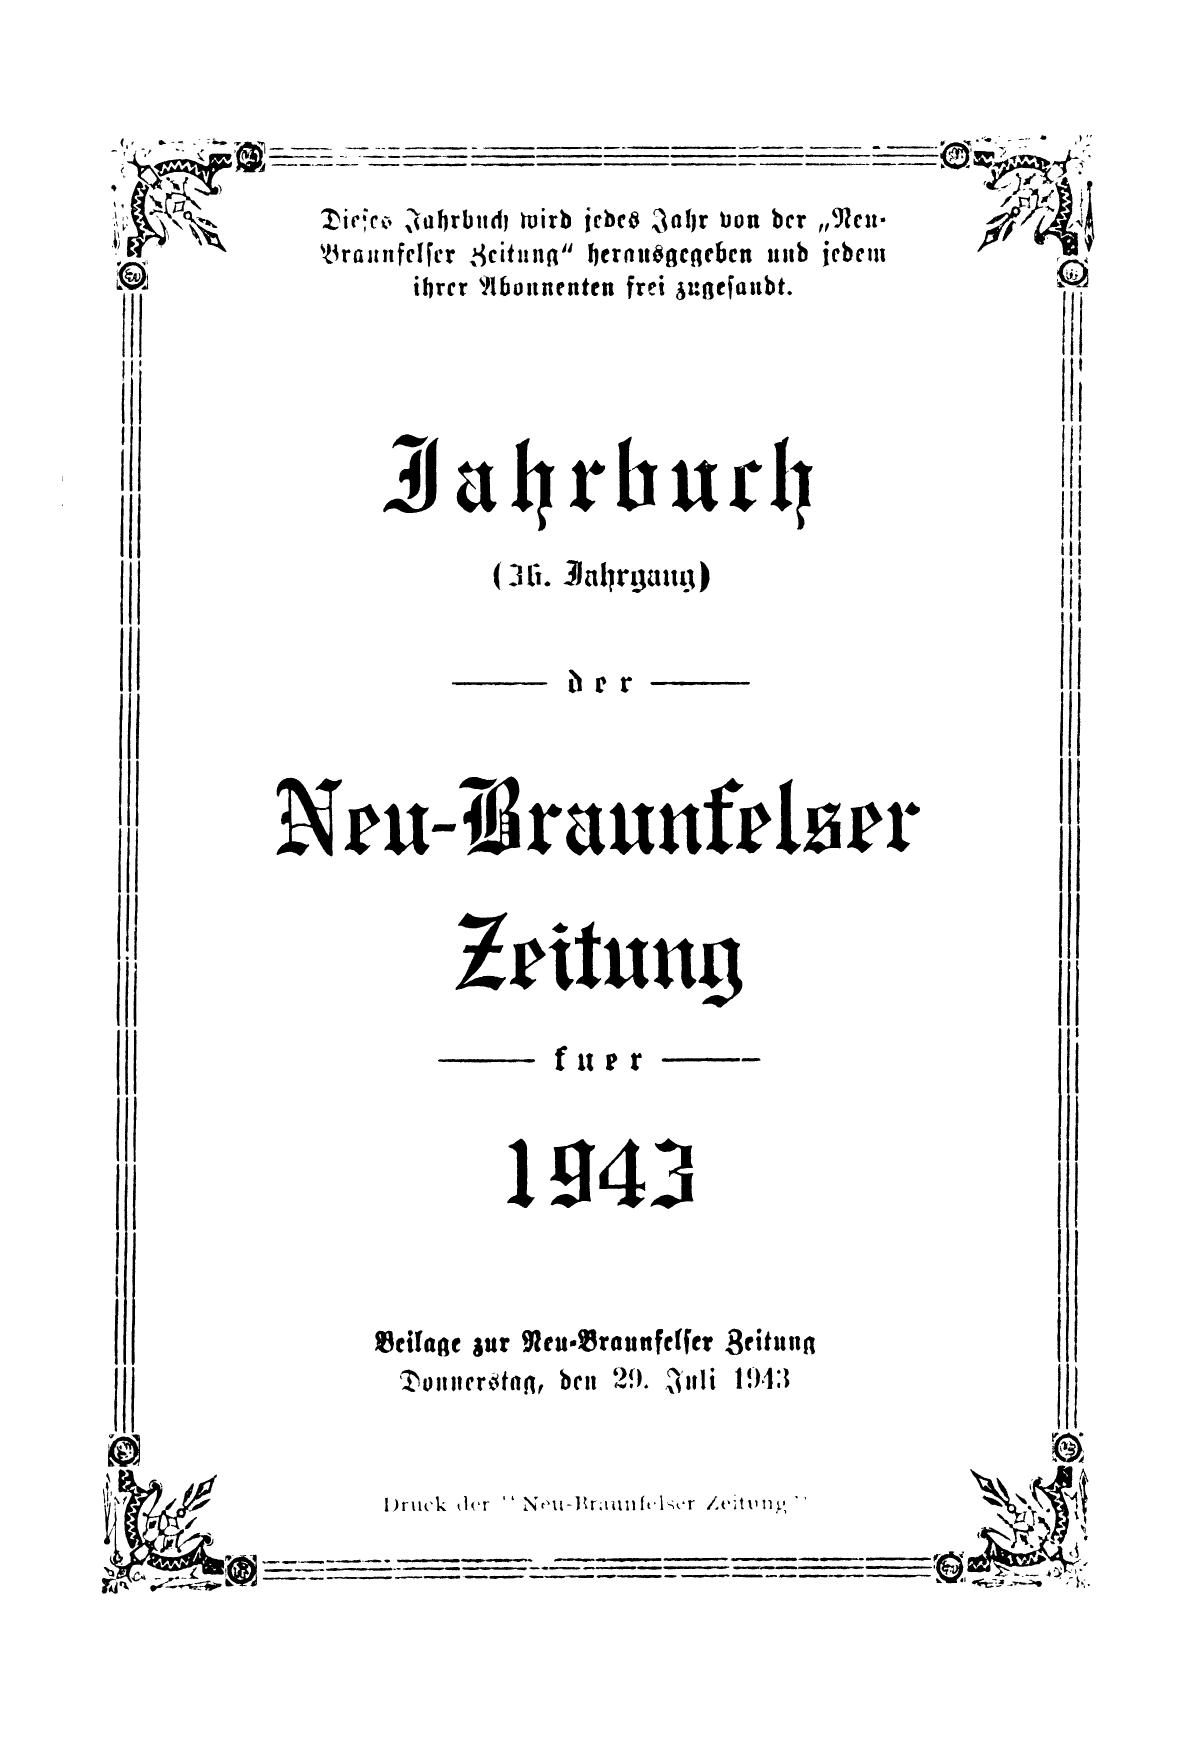 Jahrbuch der Neu-Braunfelser Zeitung fuer 1943
                                                
                                                    Front Cover
                                                